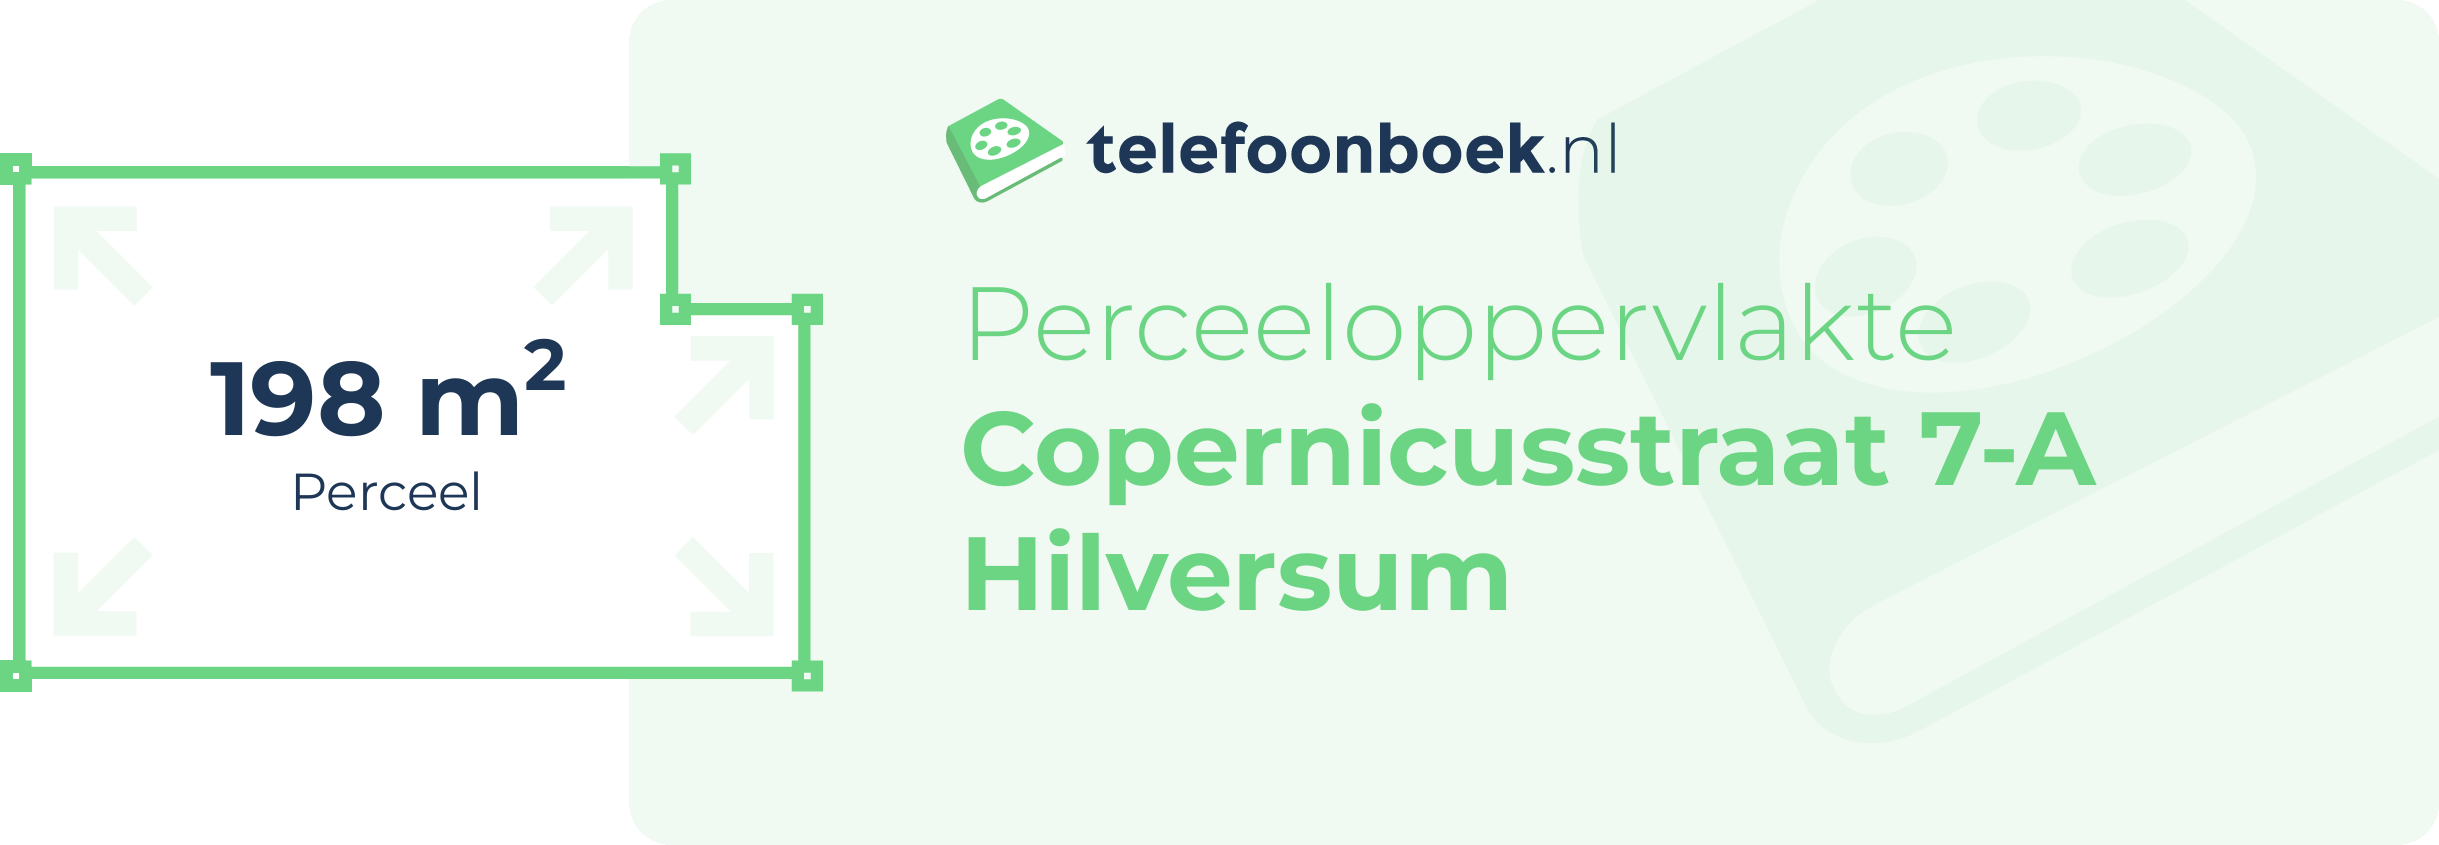 Perceeloppervlakte Copernicusstraat 7-A Hilversum